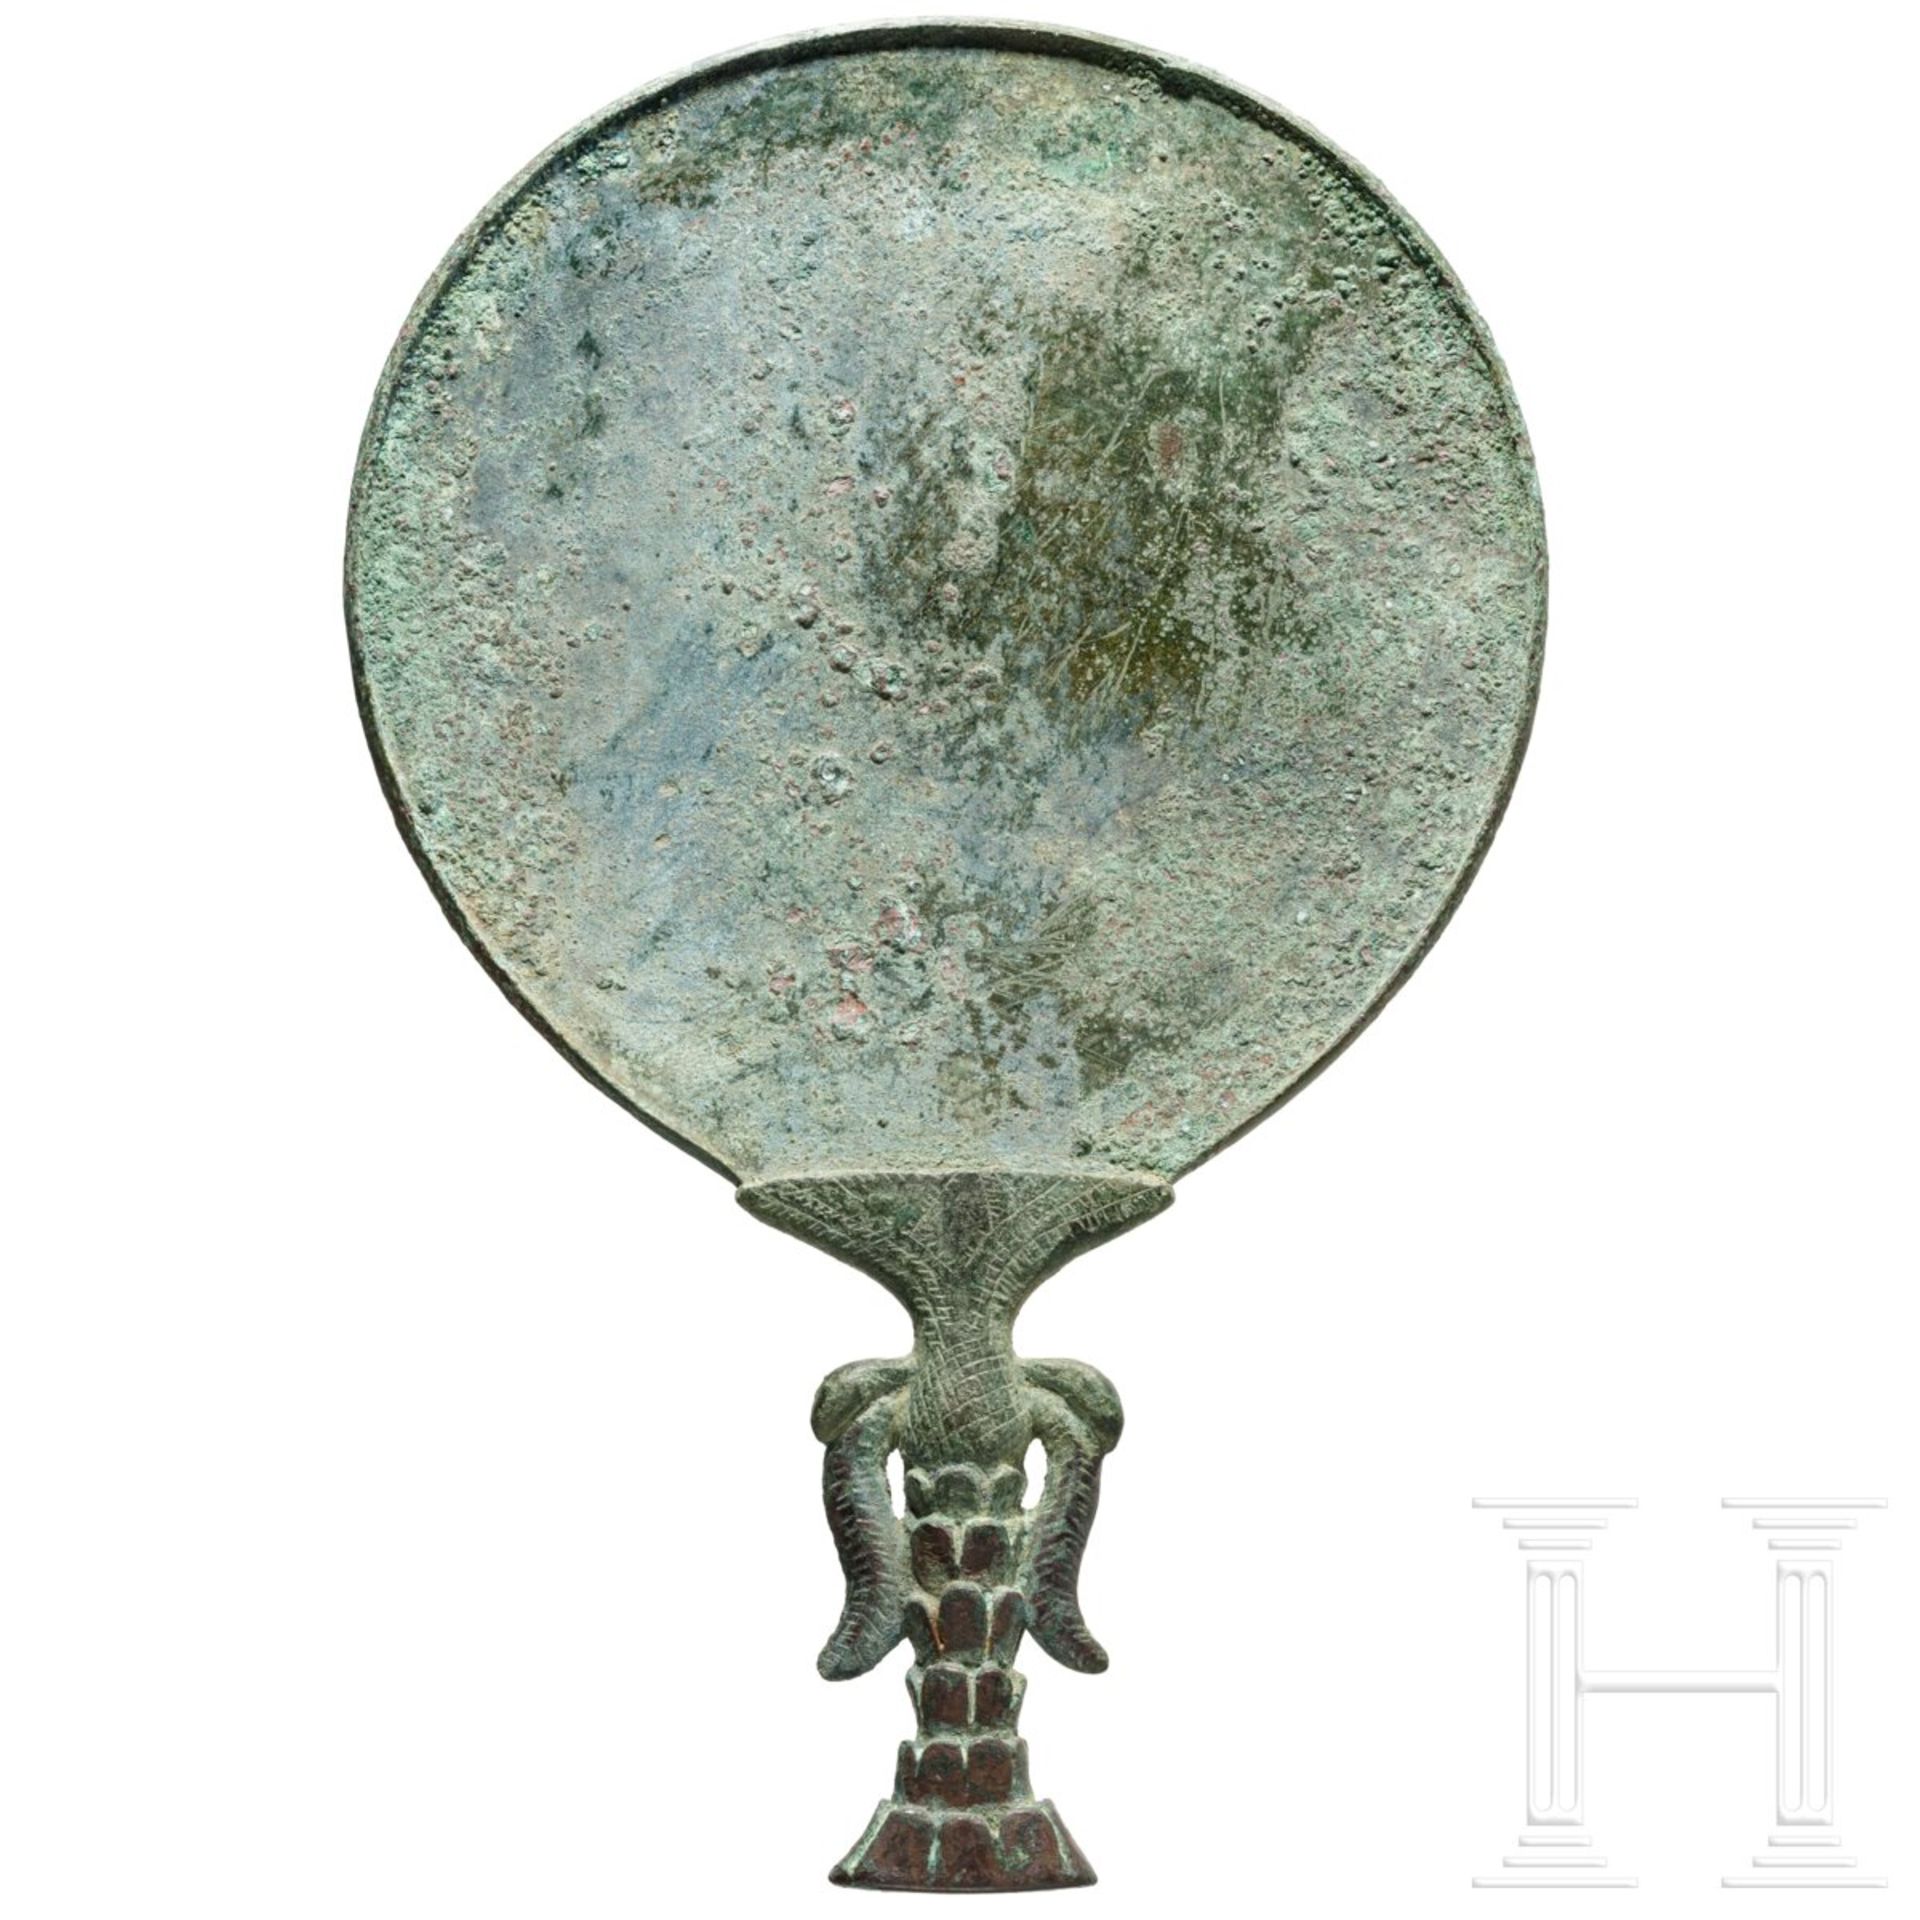 Gro§er Bronzespiegel, elamitisch-sumerisch, 2. Jtsd. v. Chr. - Bild 2 aus 5